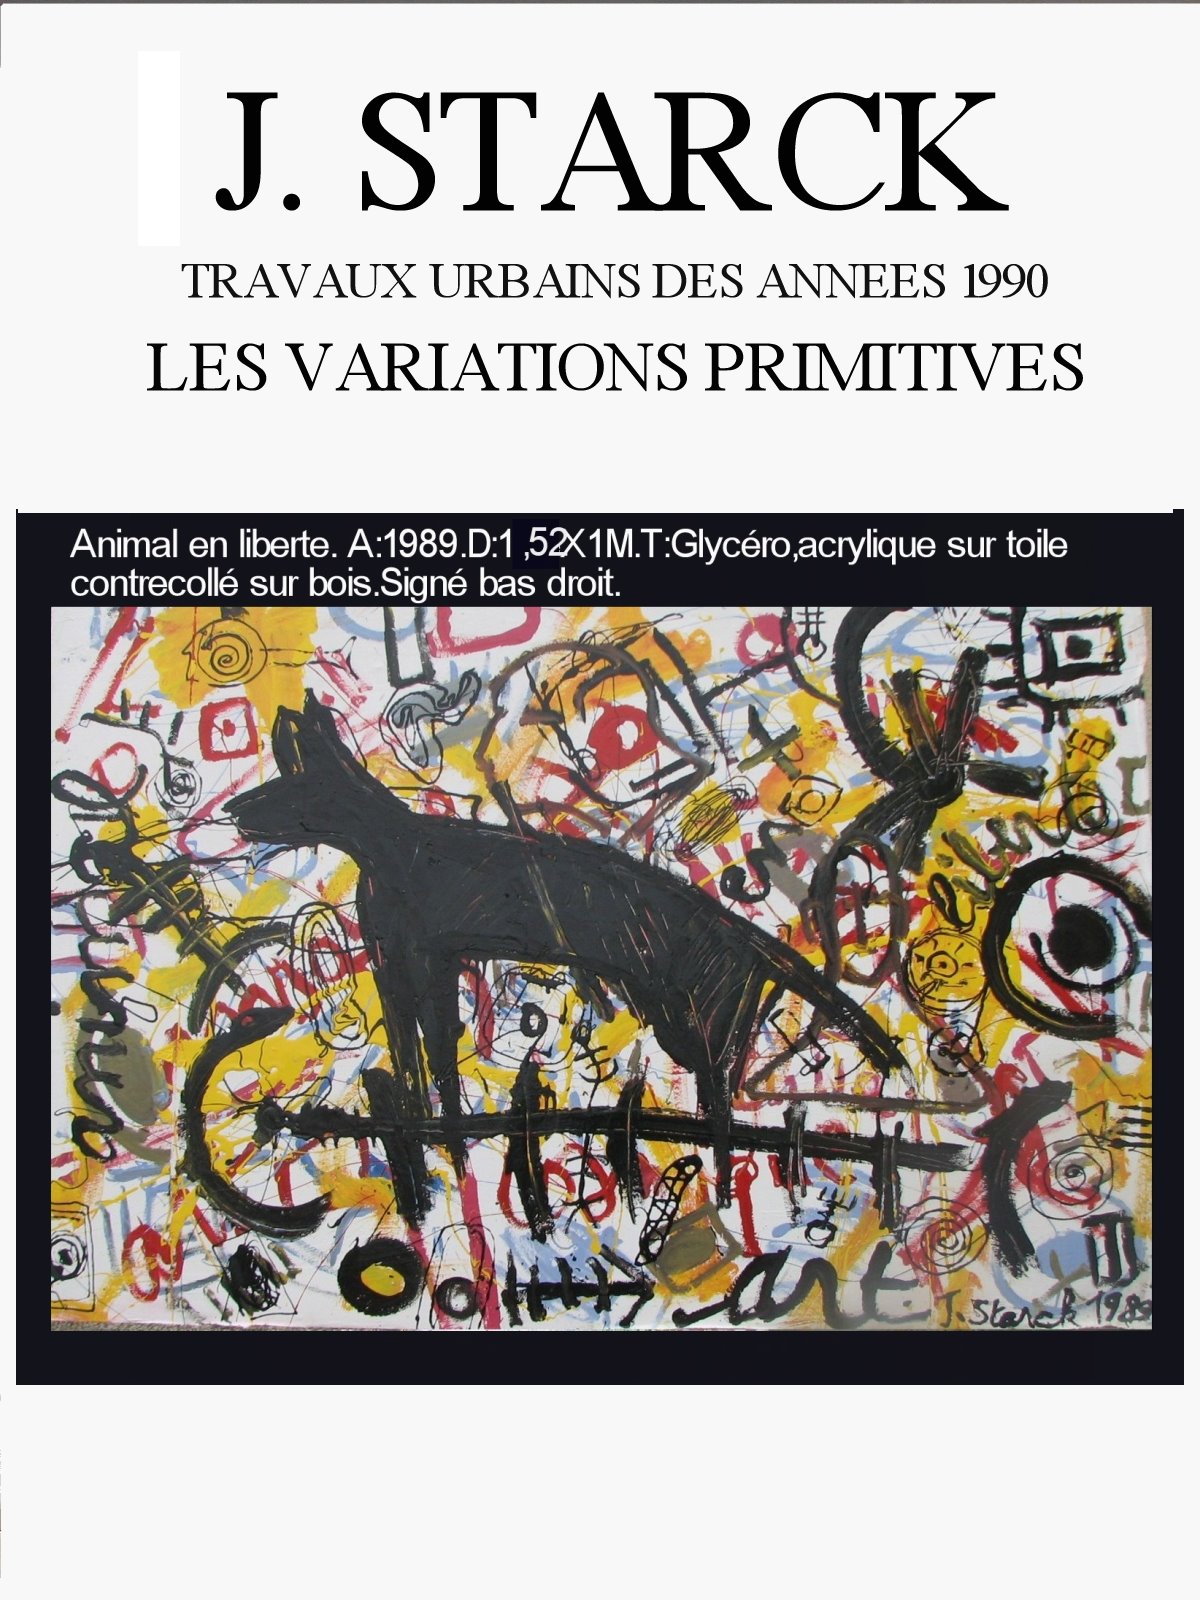 [TRVAUX+URBAINS++1990+Variations+primitivesJPG.JPG]